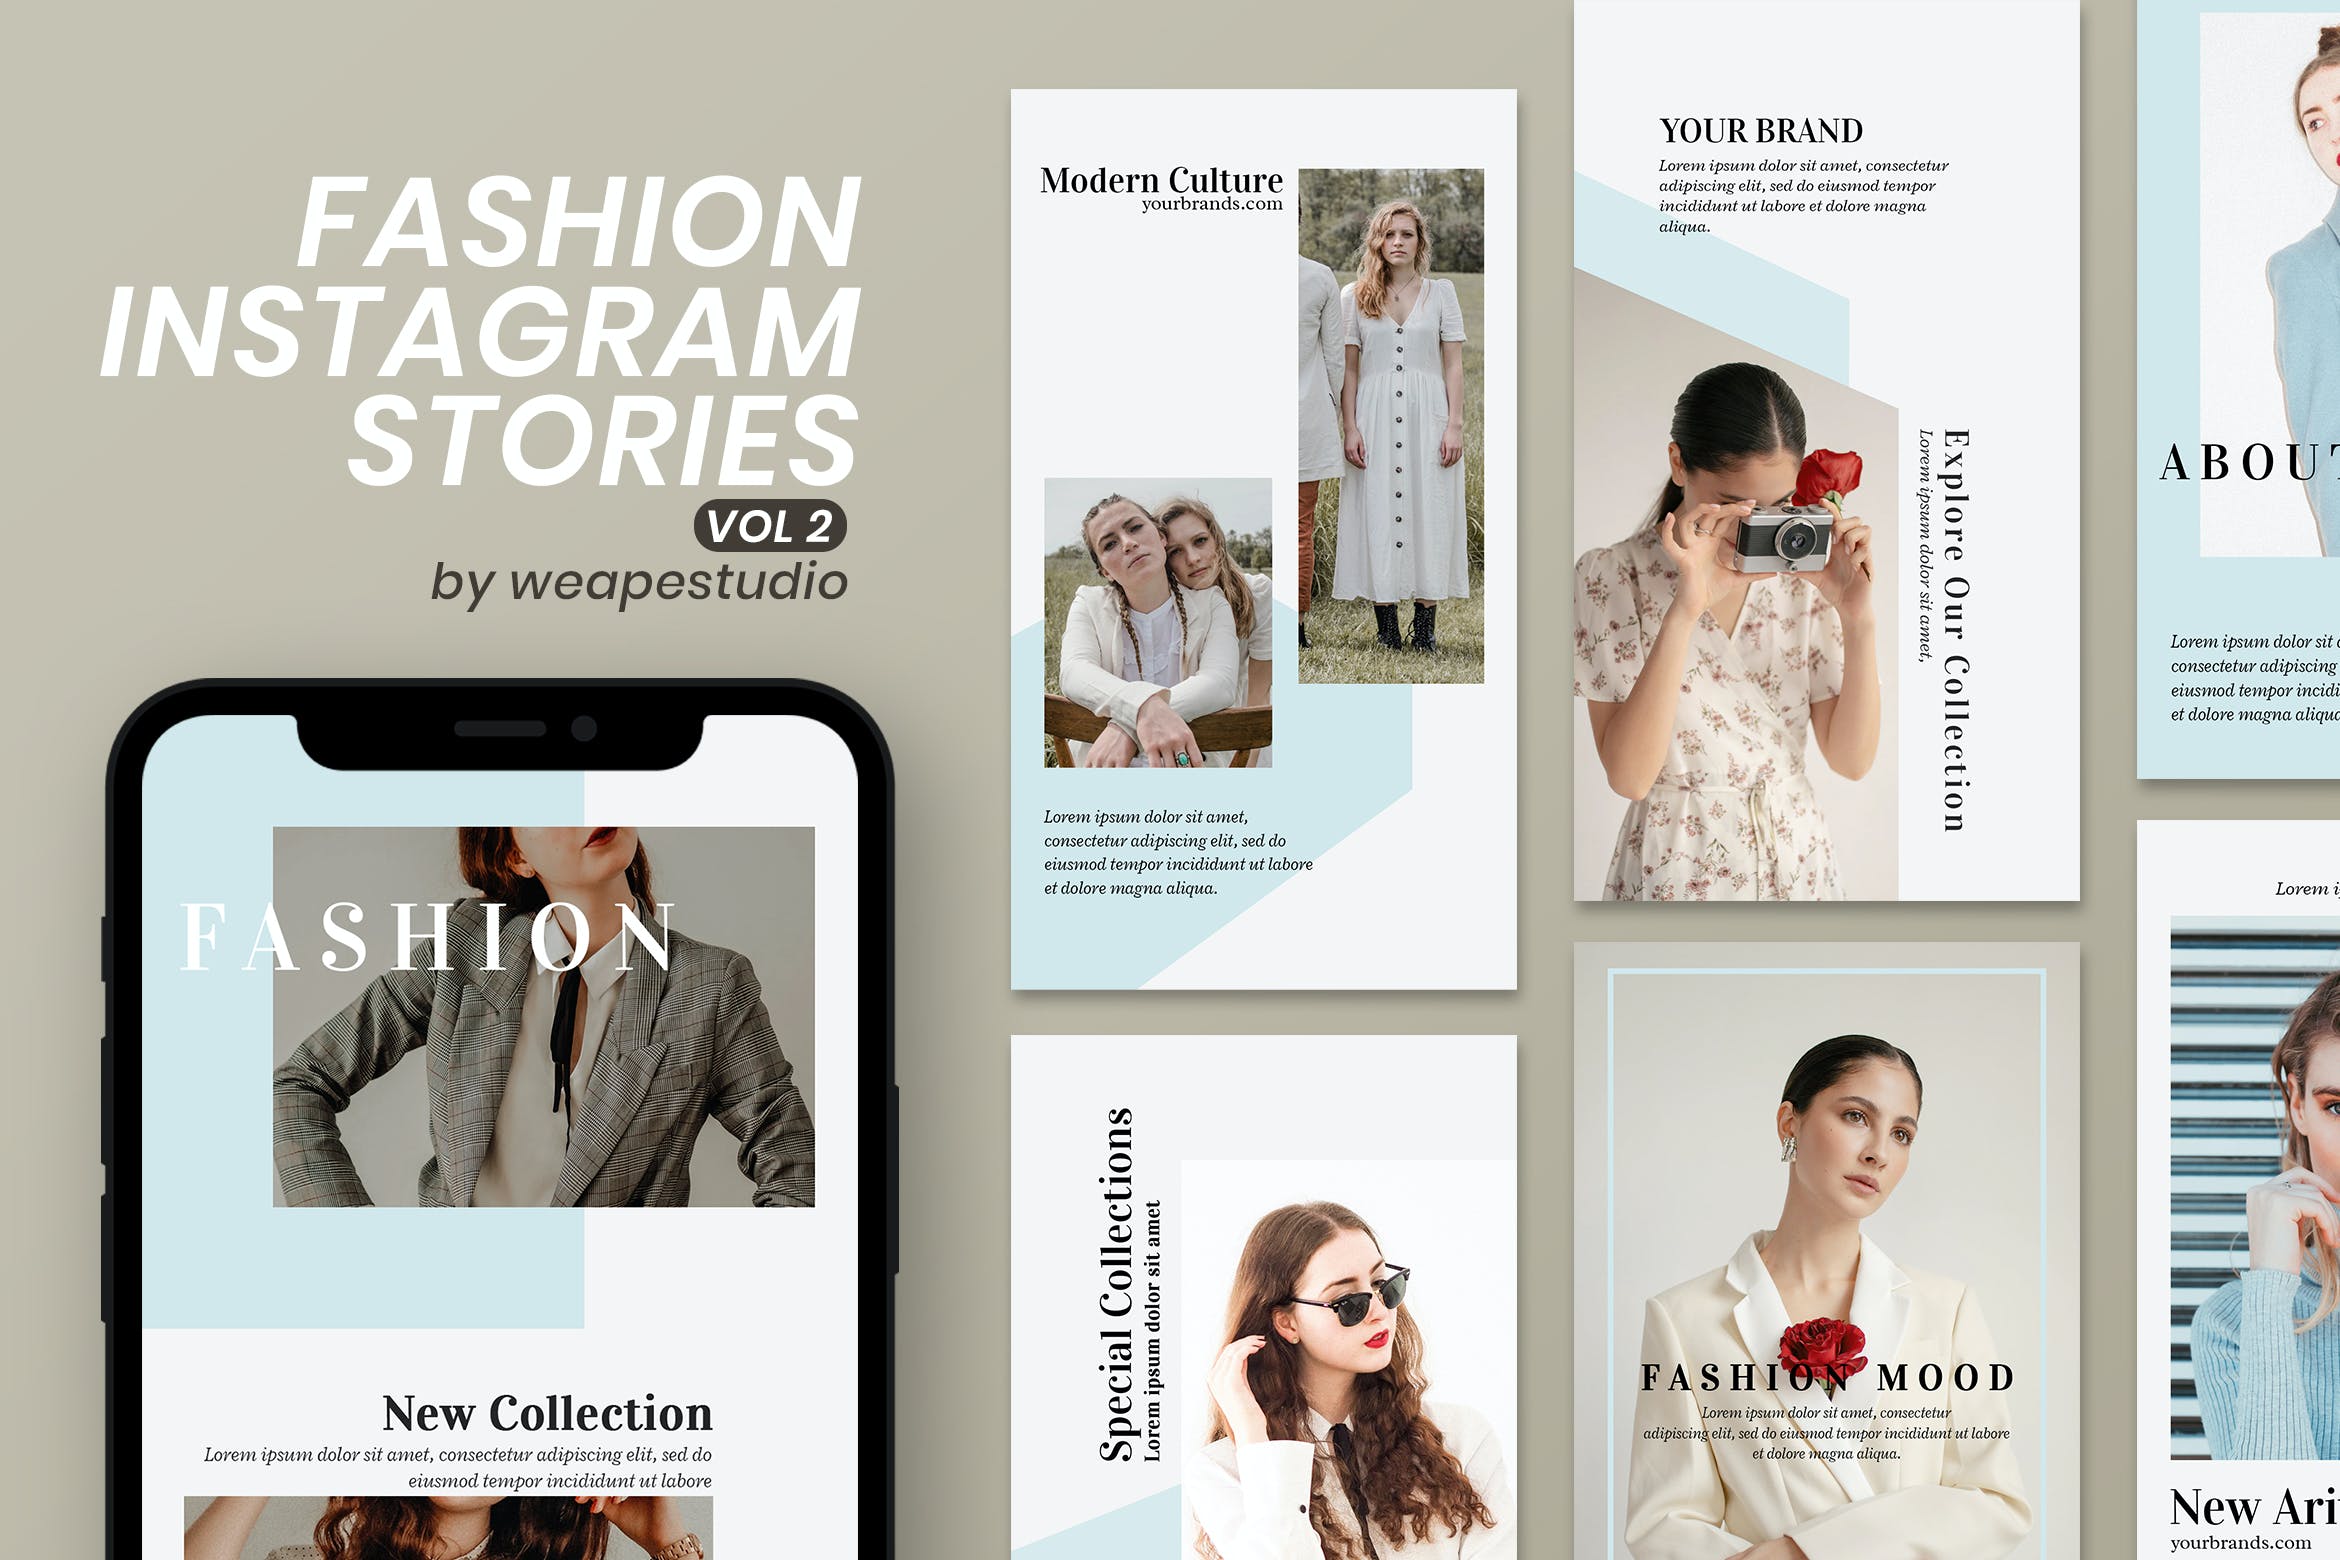 潮流欧美摄影大片Ins故事社交媒体贴图模板v.2 Fashion Instagram Stories Vol 2设计素材模板